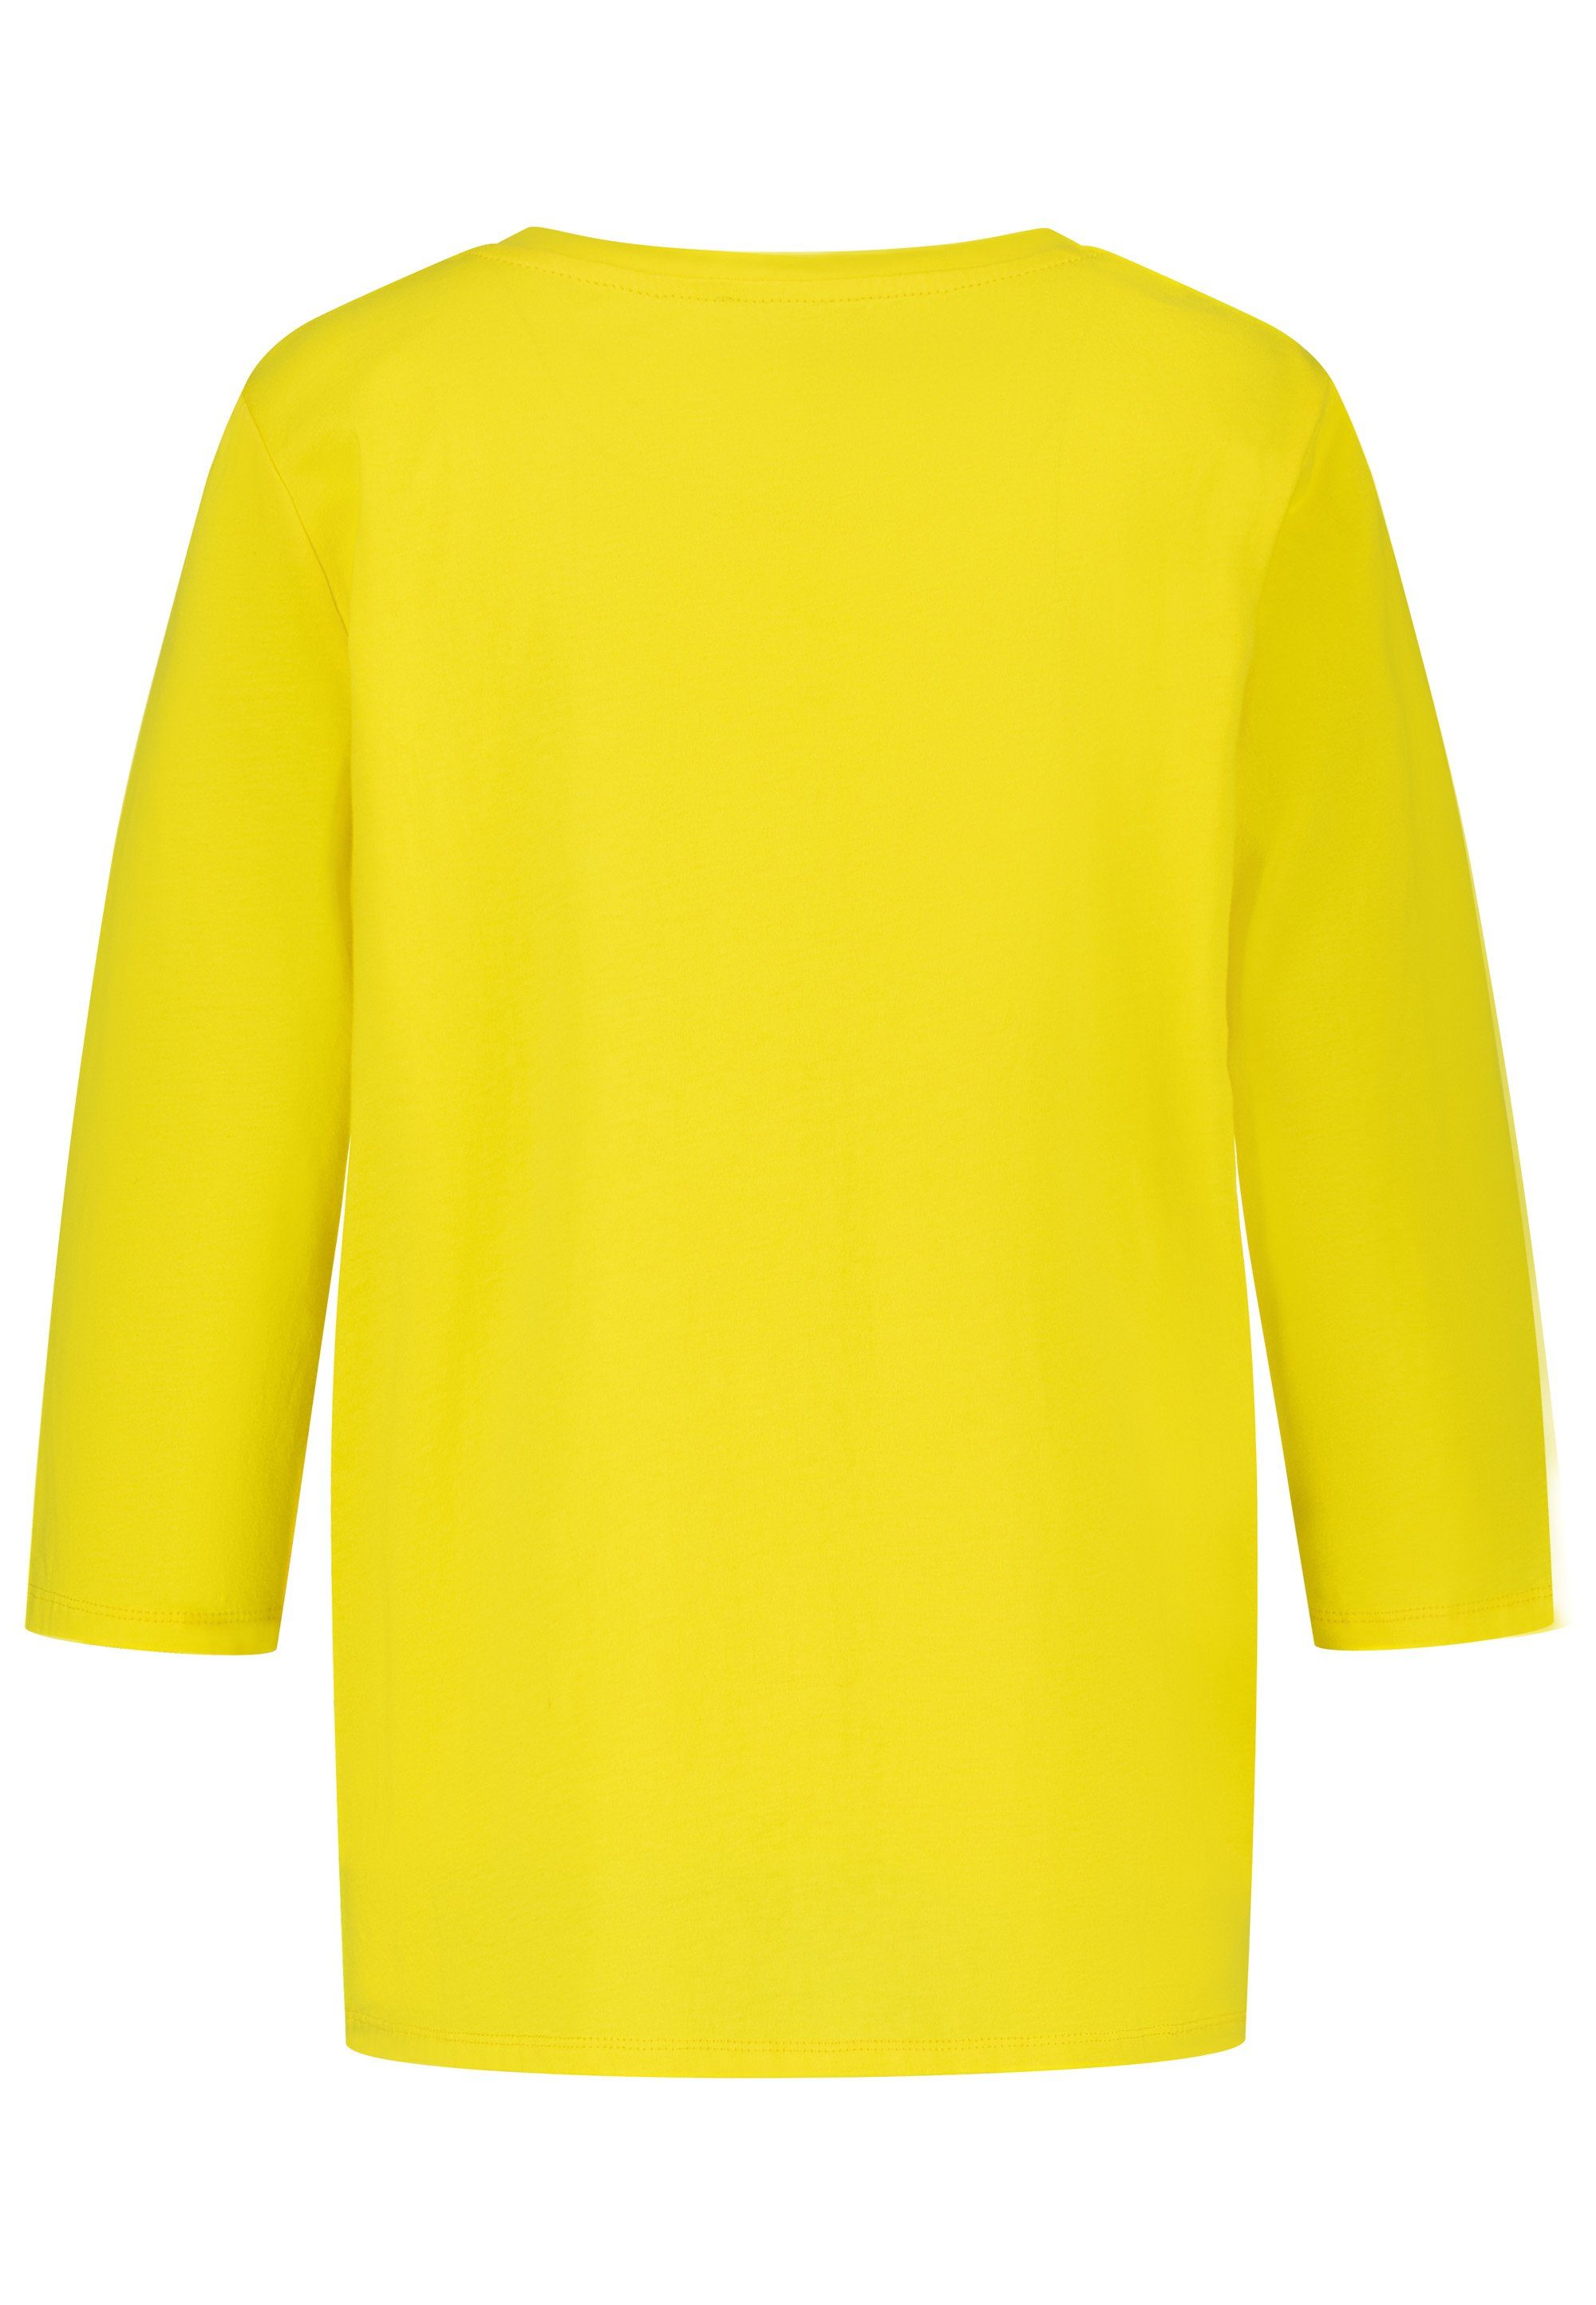 gelb glänzendem October Langarmshirt mit Sternchen-Besatz